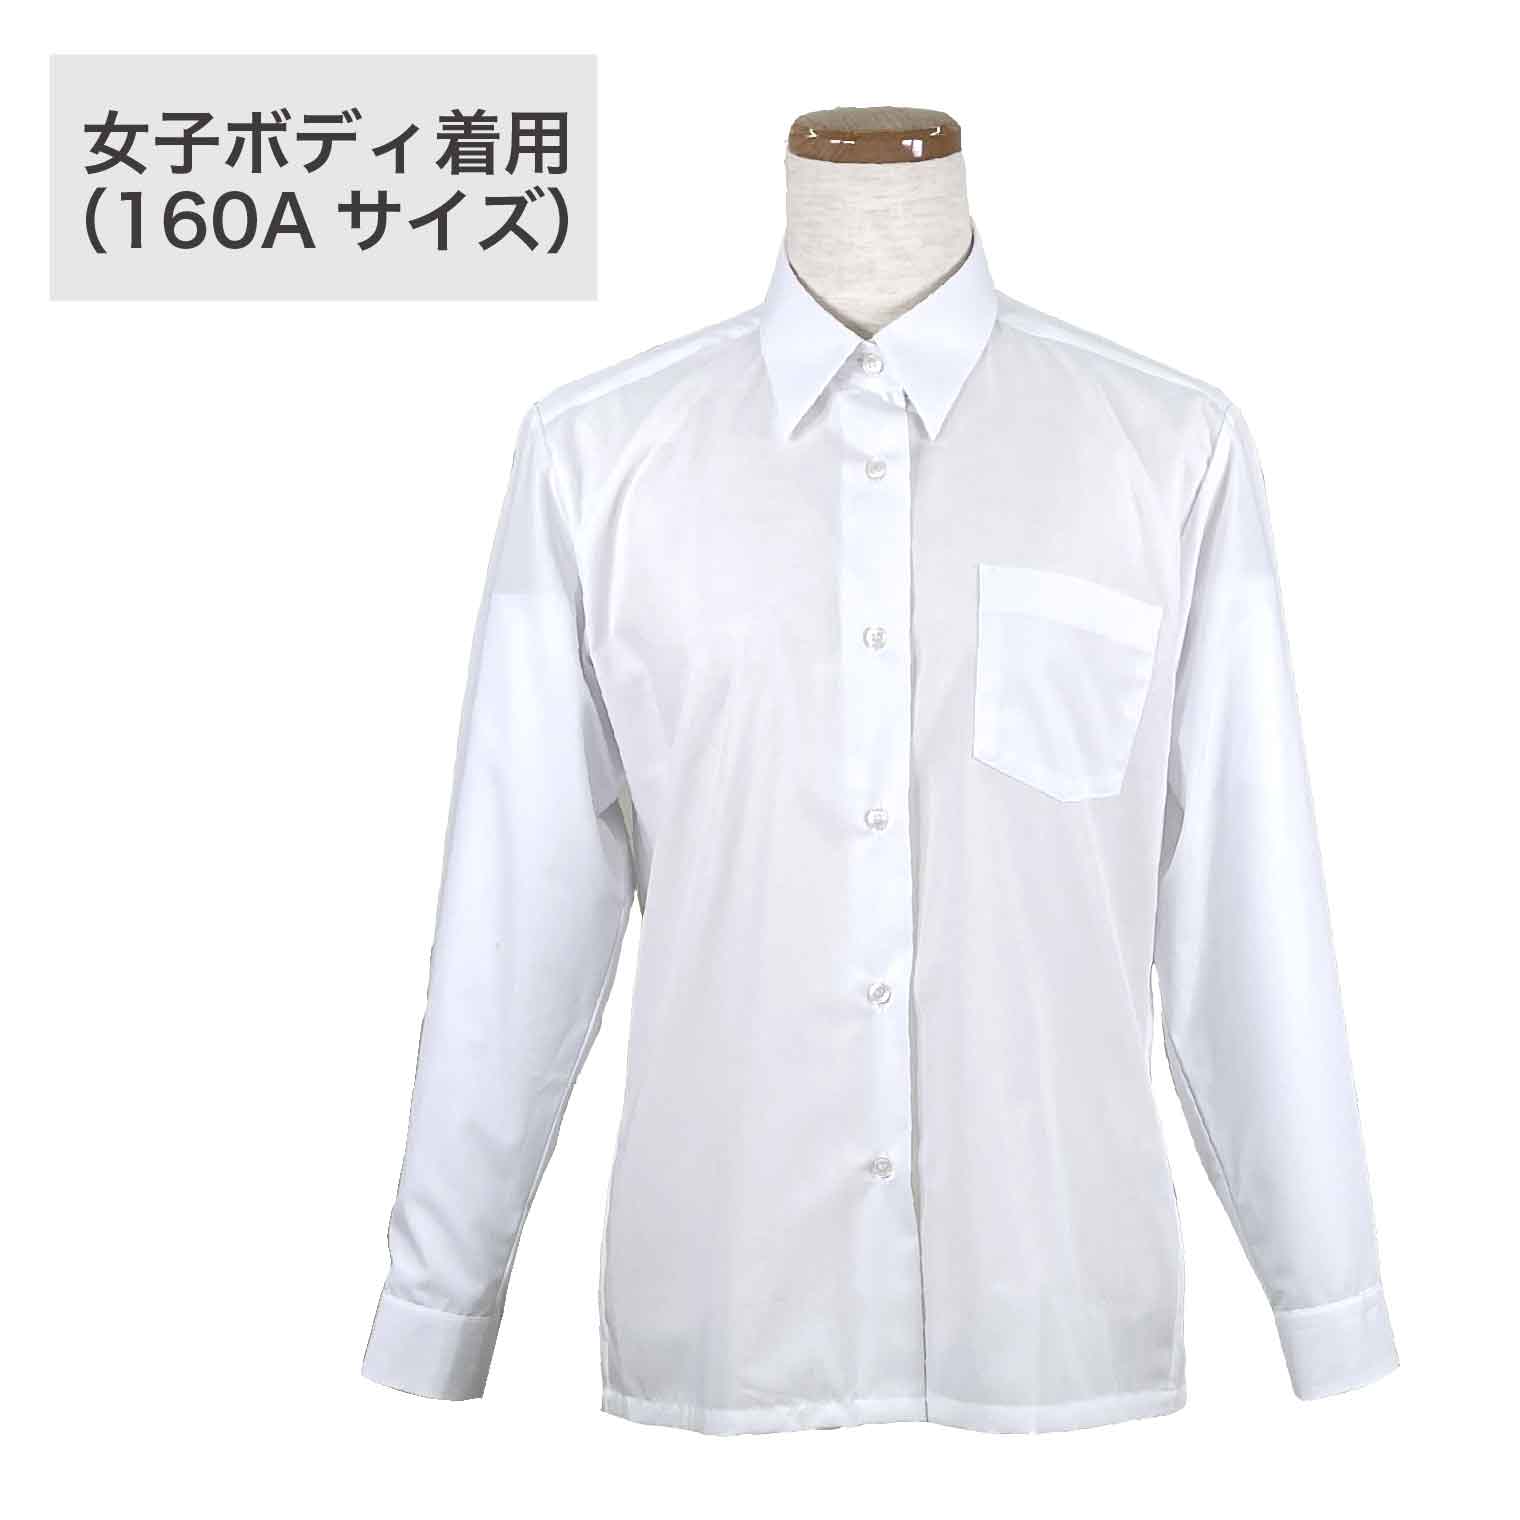 女子 長袖 カッターシャツ ワイシャツ トンボ 学生服(155A 白): トンボ